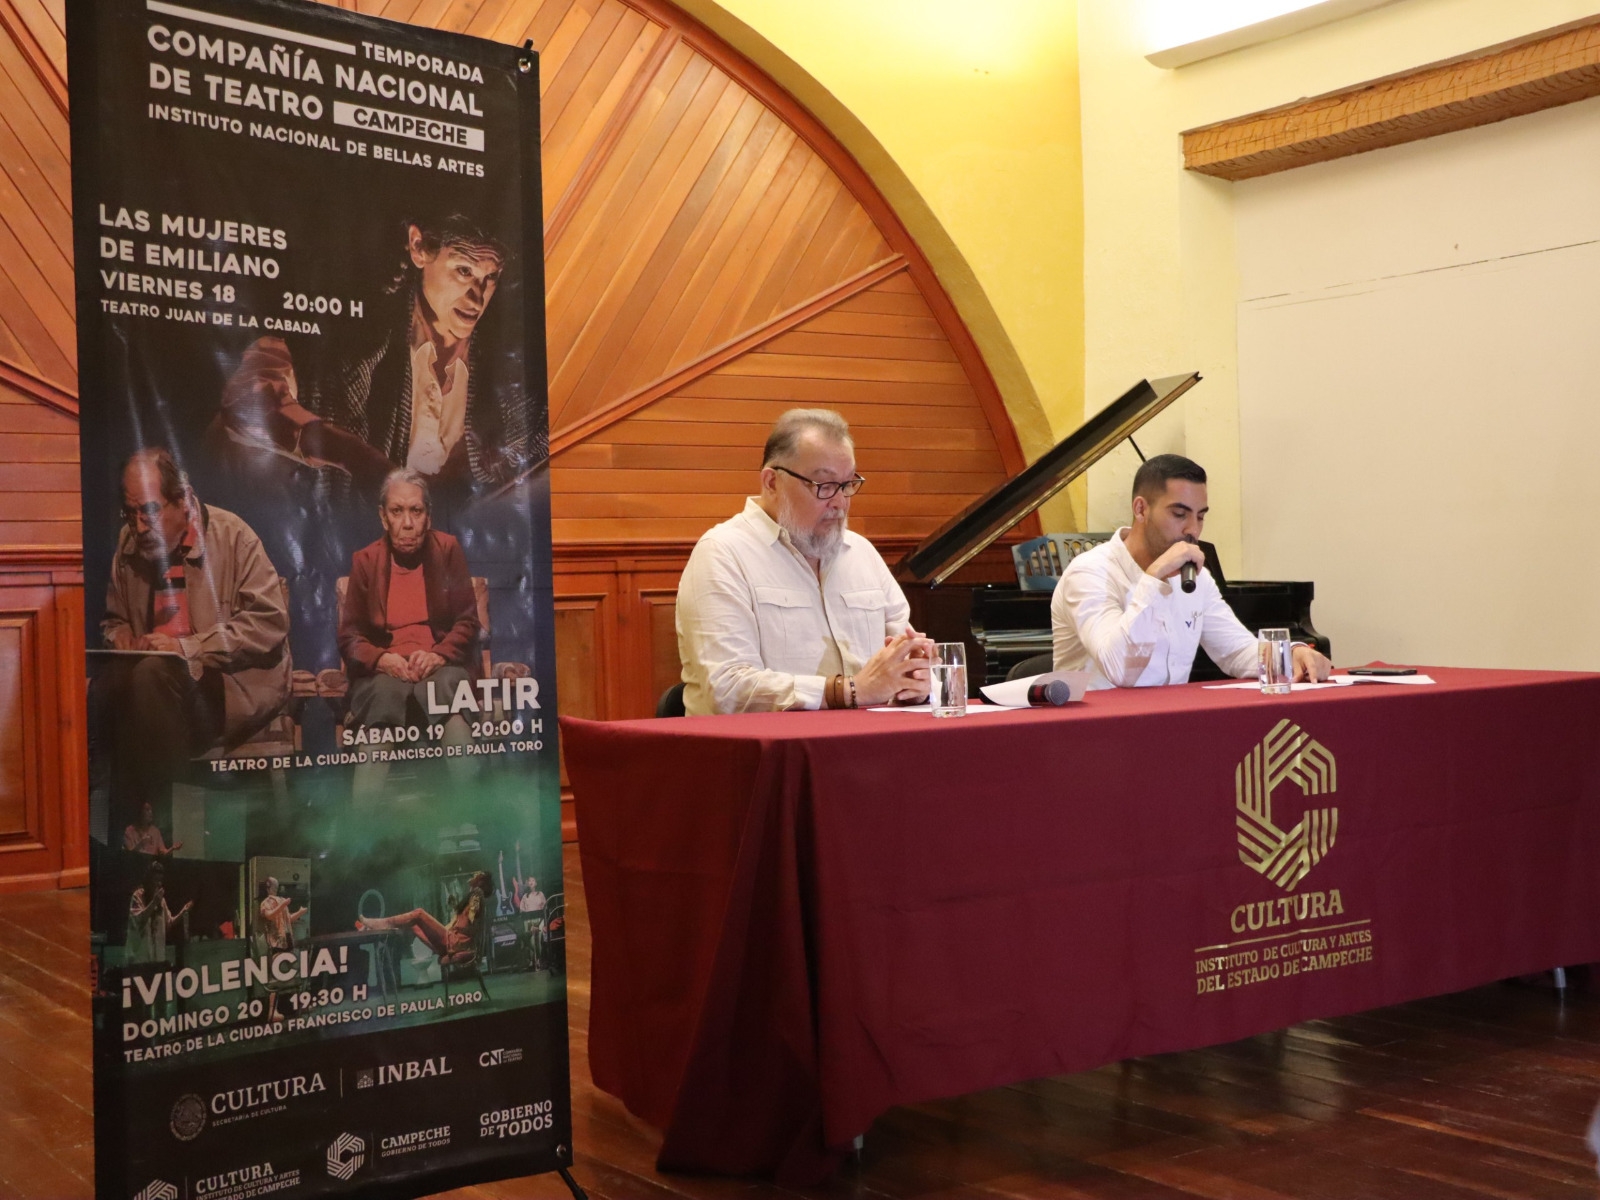 La temporada de la Compañía Nacional de Teatro en Campeche será del 16 al 21 de agosto